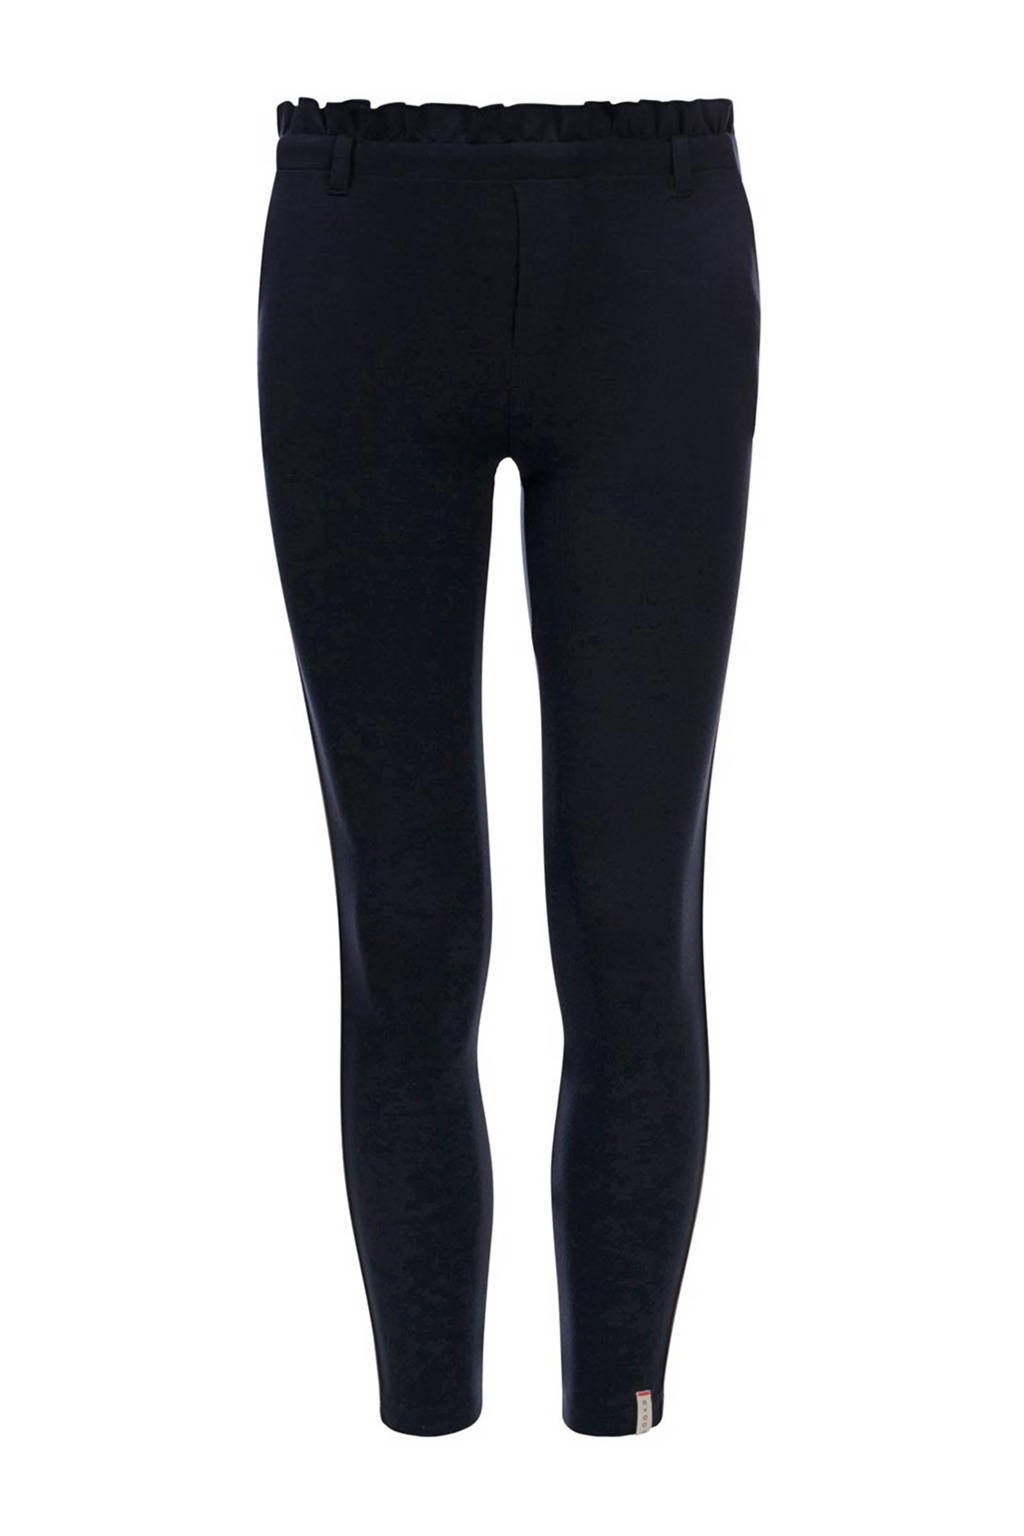 Donkerblauwe meisjes LOOXS 10sixteen slim fit broek van viscose met regular waist en elastische tailleband